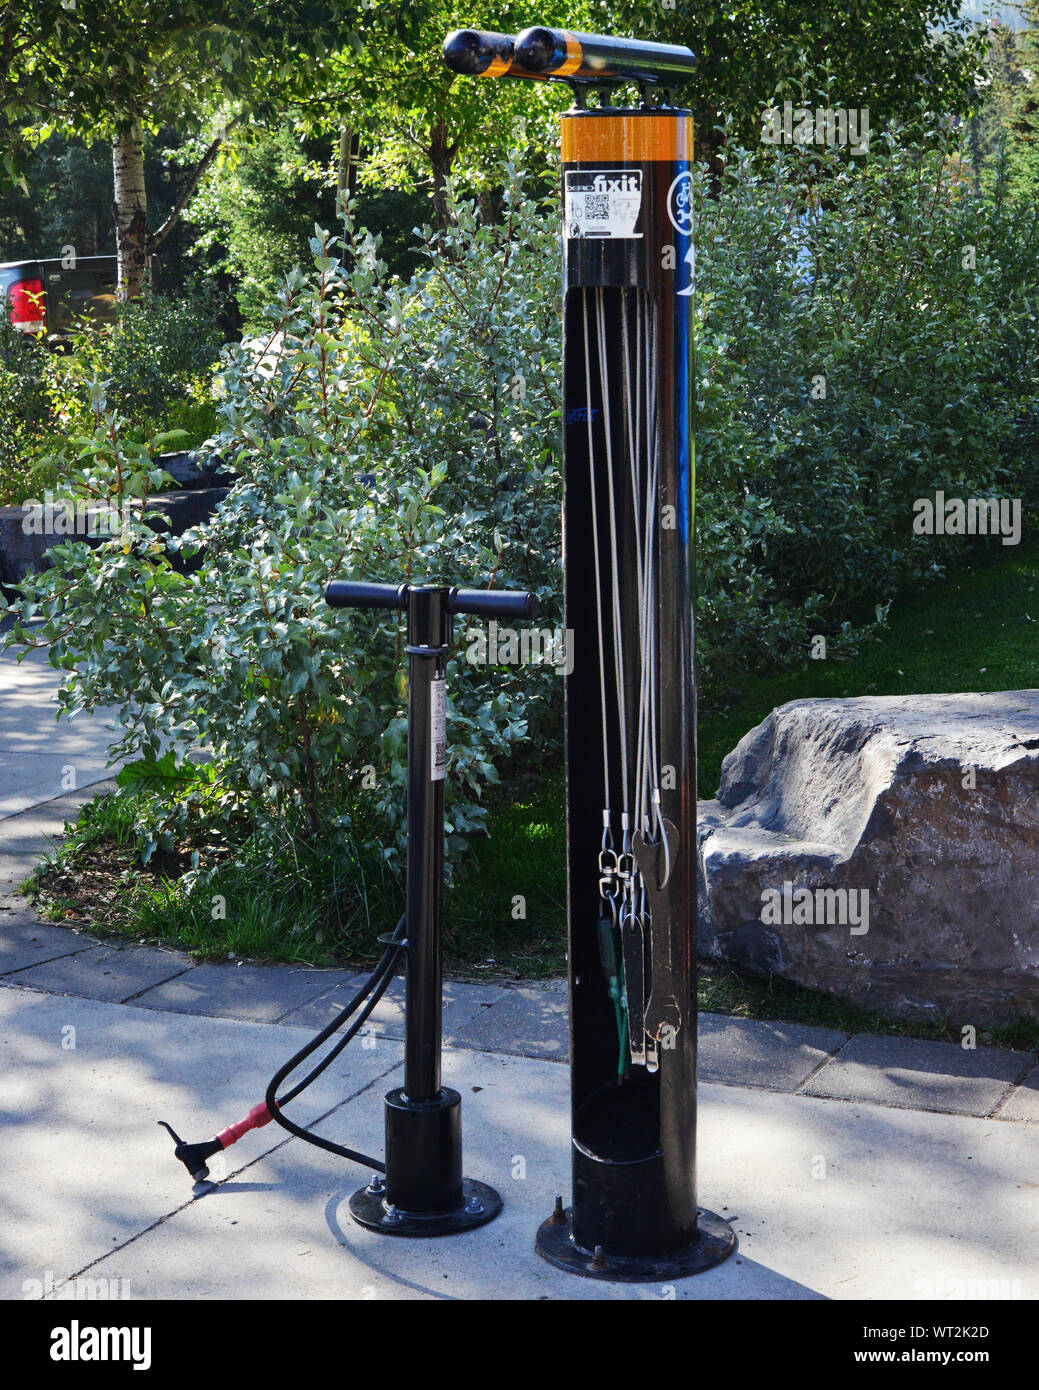 Dans un coin du stationnement du parc Central est cette facilité pour les cyclistes. Il dispose d'un pneu (pneu) et d'un ensemble d'outils de vélo utile o. Banque D'Images